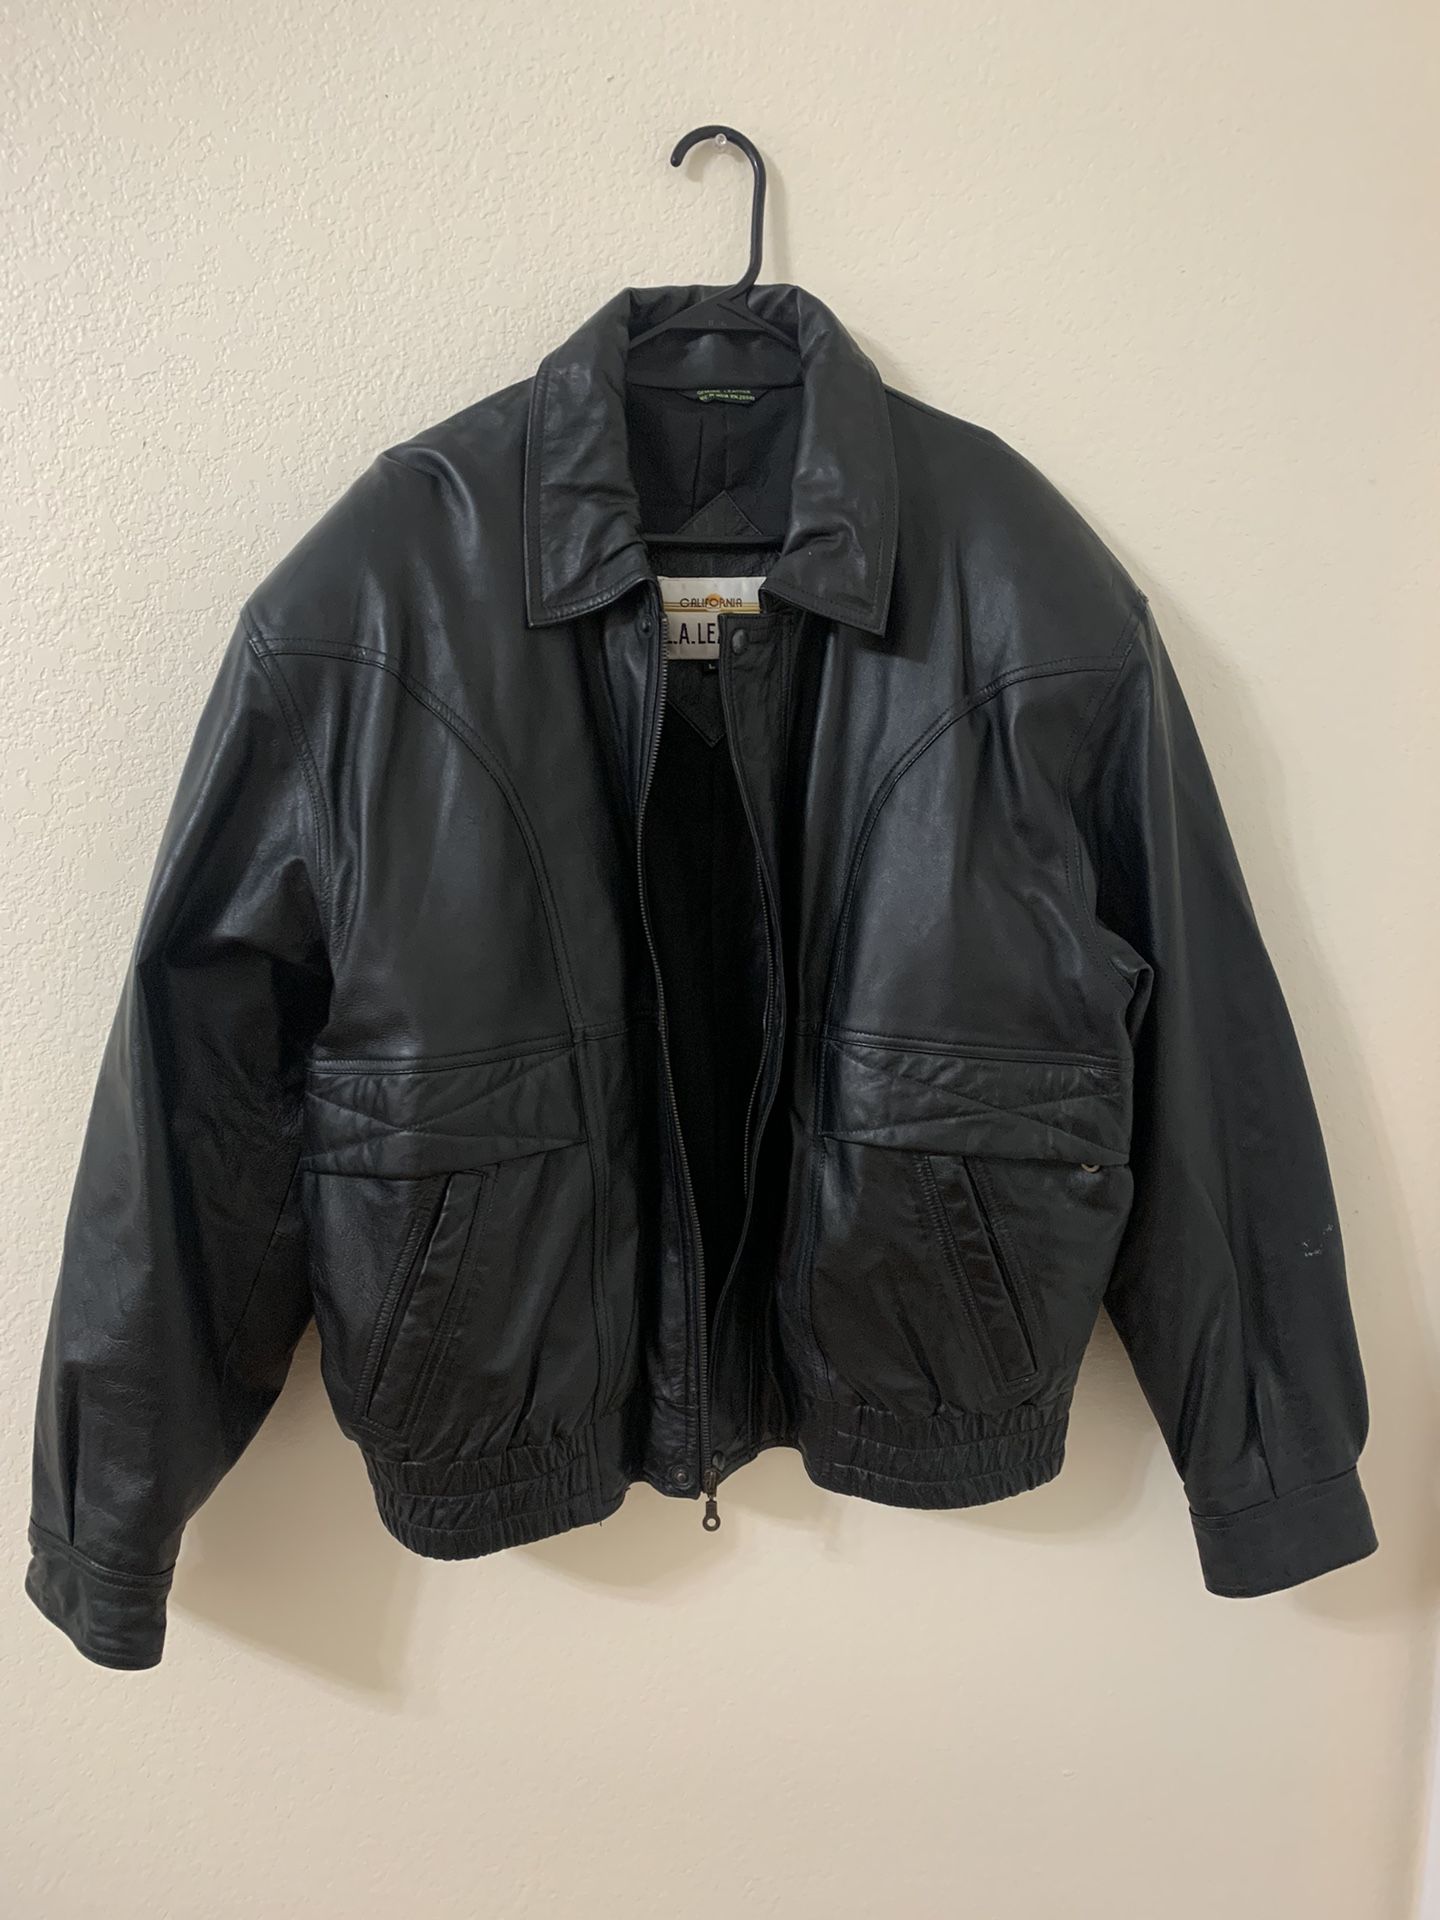 Men’s Leather Jacket Size Large  Black 